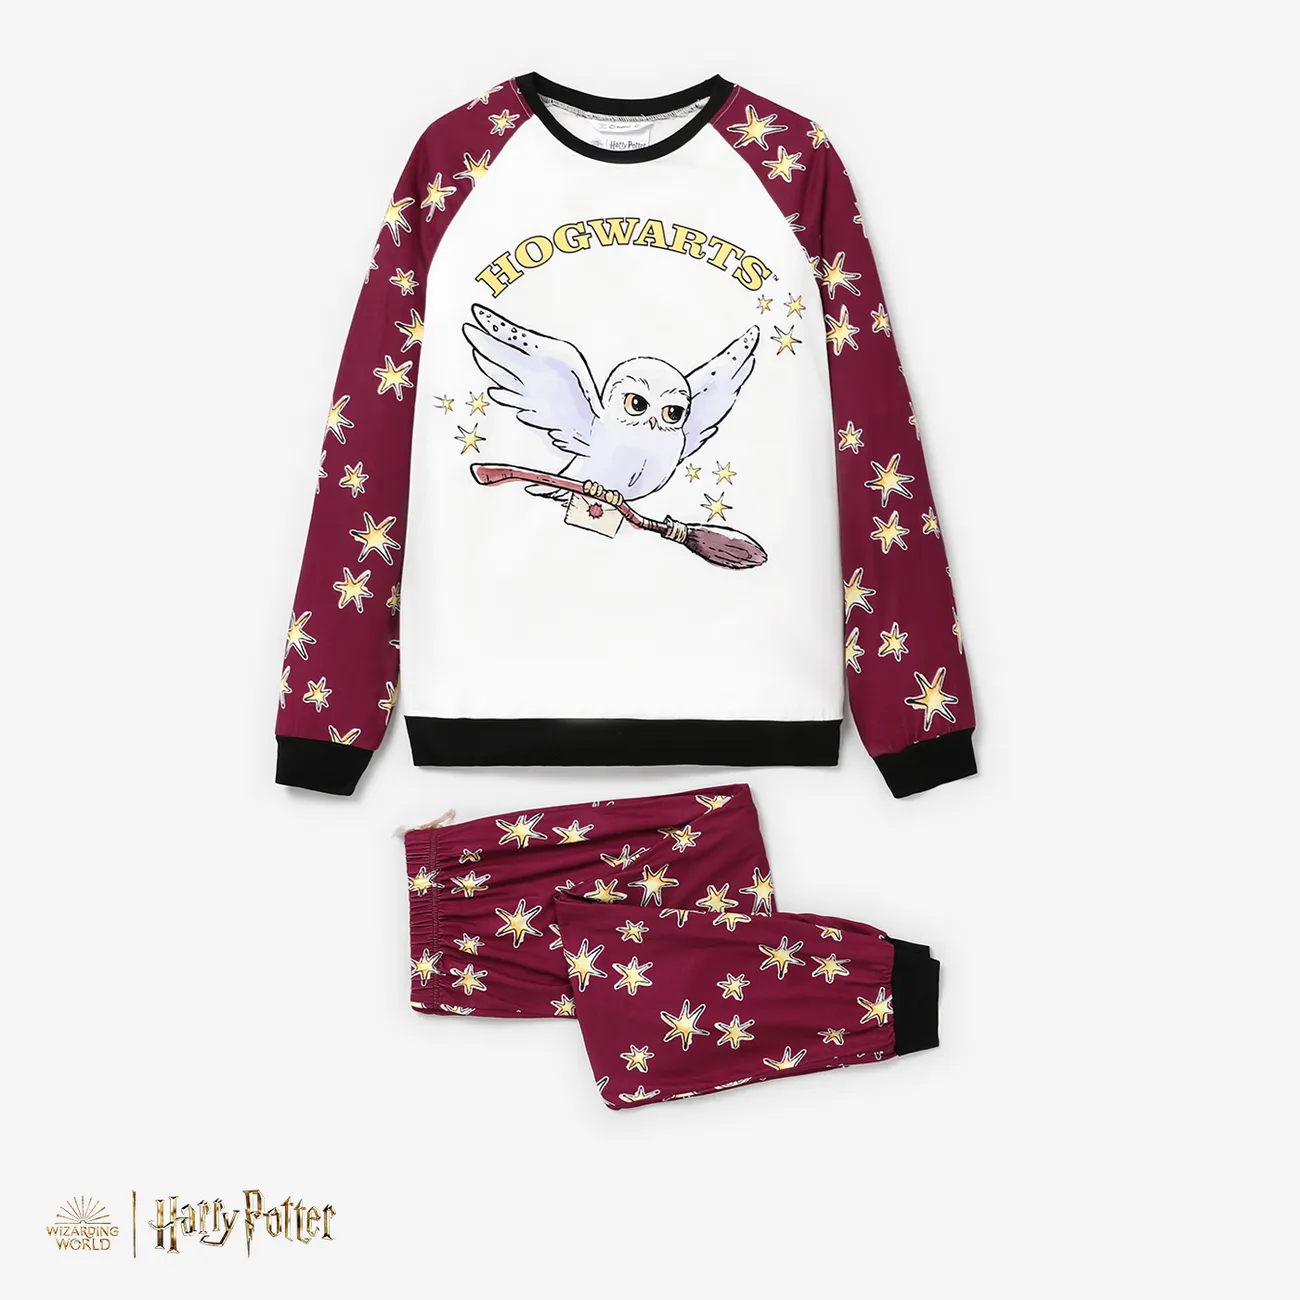 Harry Potter Familien-Looks Langärmelig Familien-Outfits Pyjamas (Flame Resistant) Burgundy big image 1